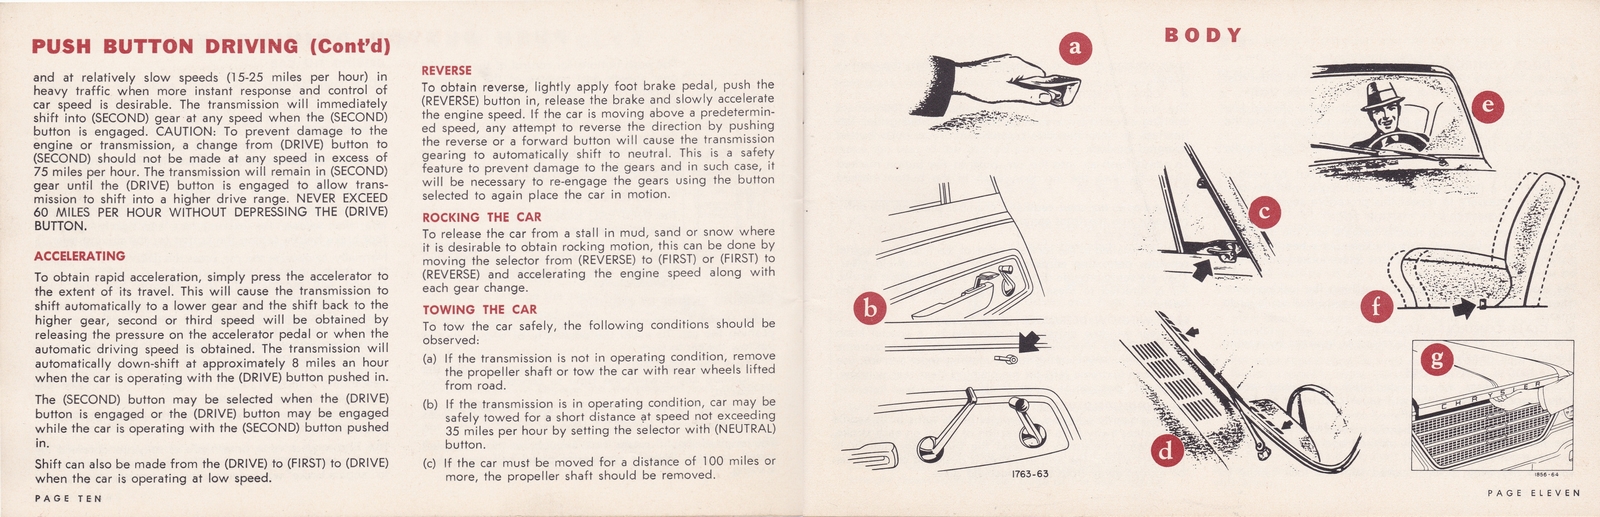 n_1964 Chrysler Owner's Manual (Cdn)-10-11.jpg